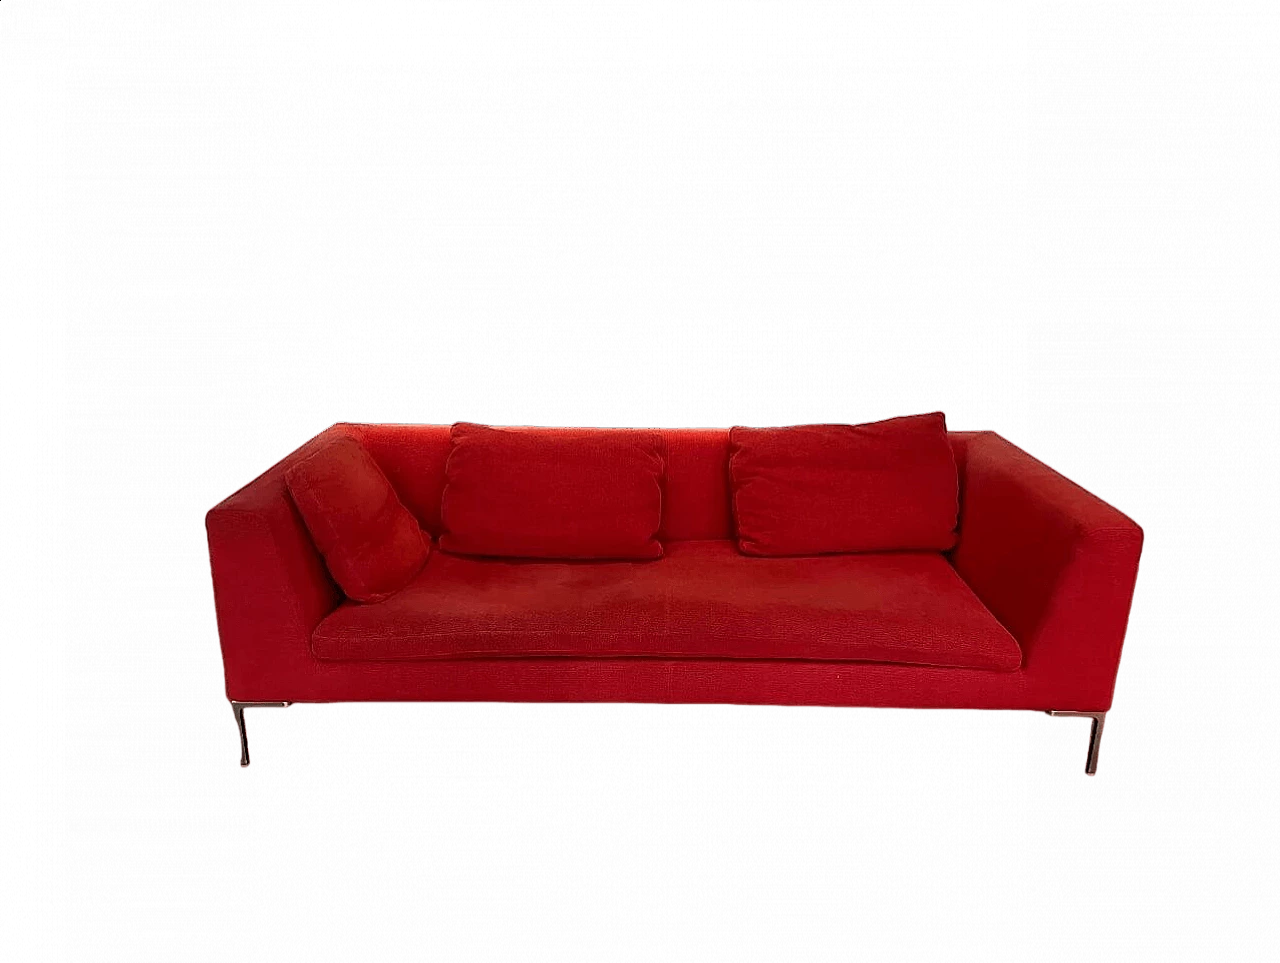 CH228 Charles sofa in red Maxalto-Cat cotton by Antonio Citterio for B&B Italia 27